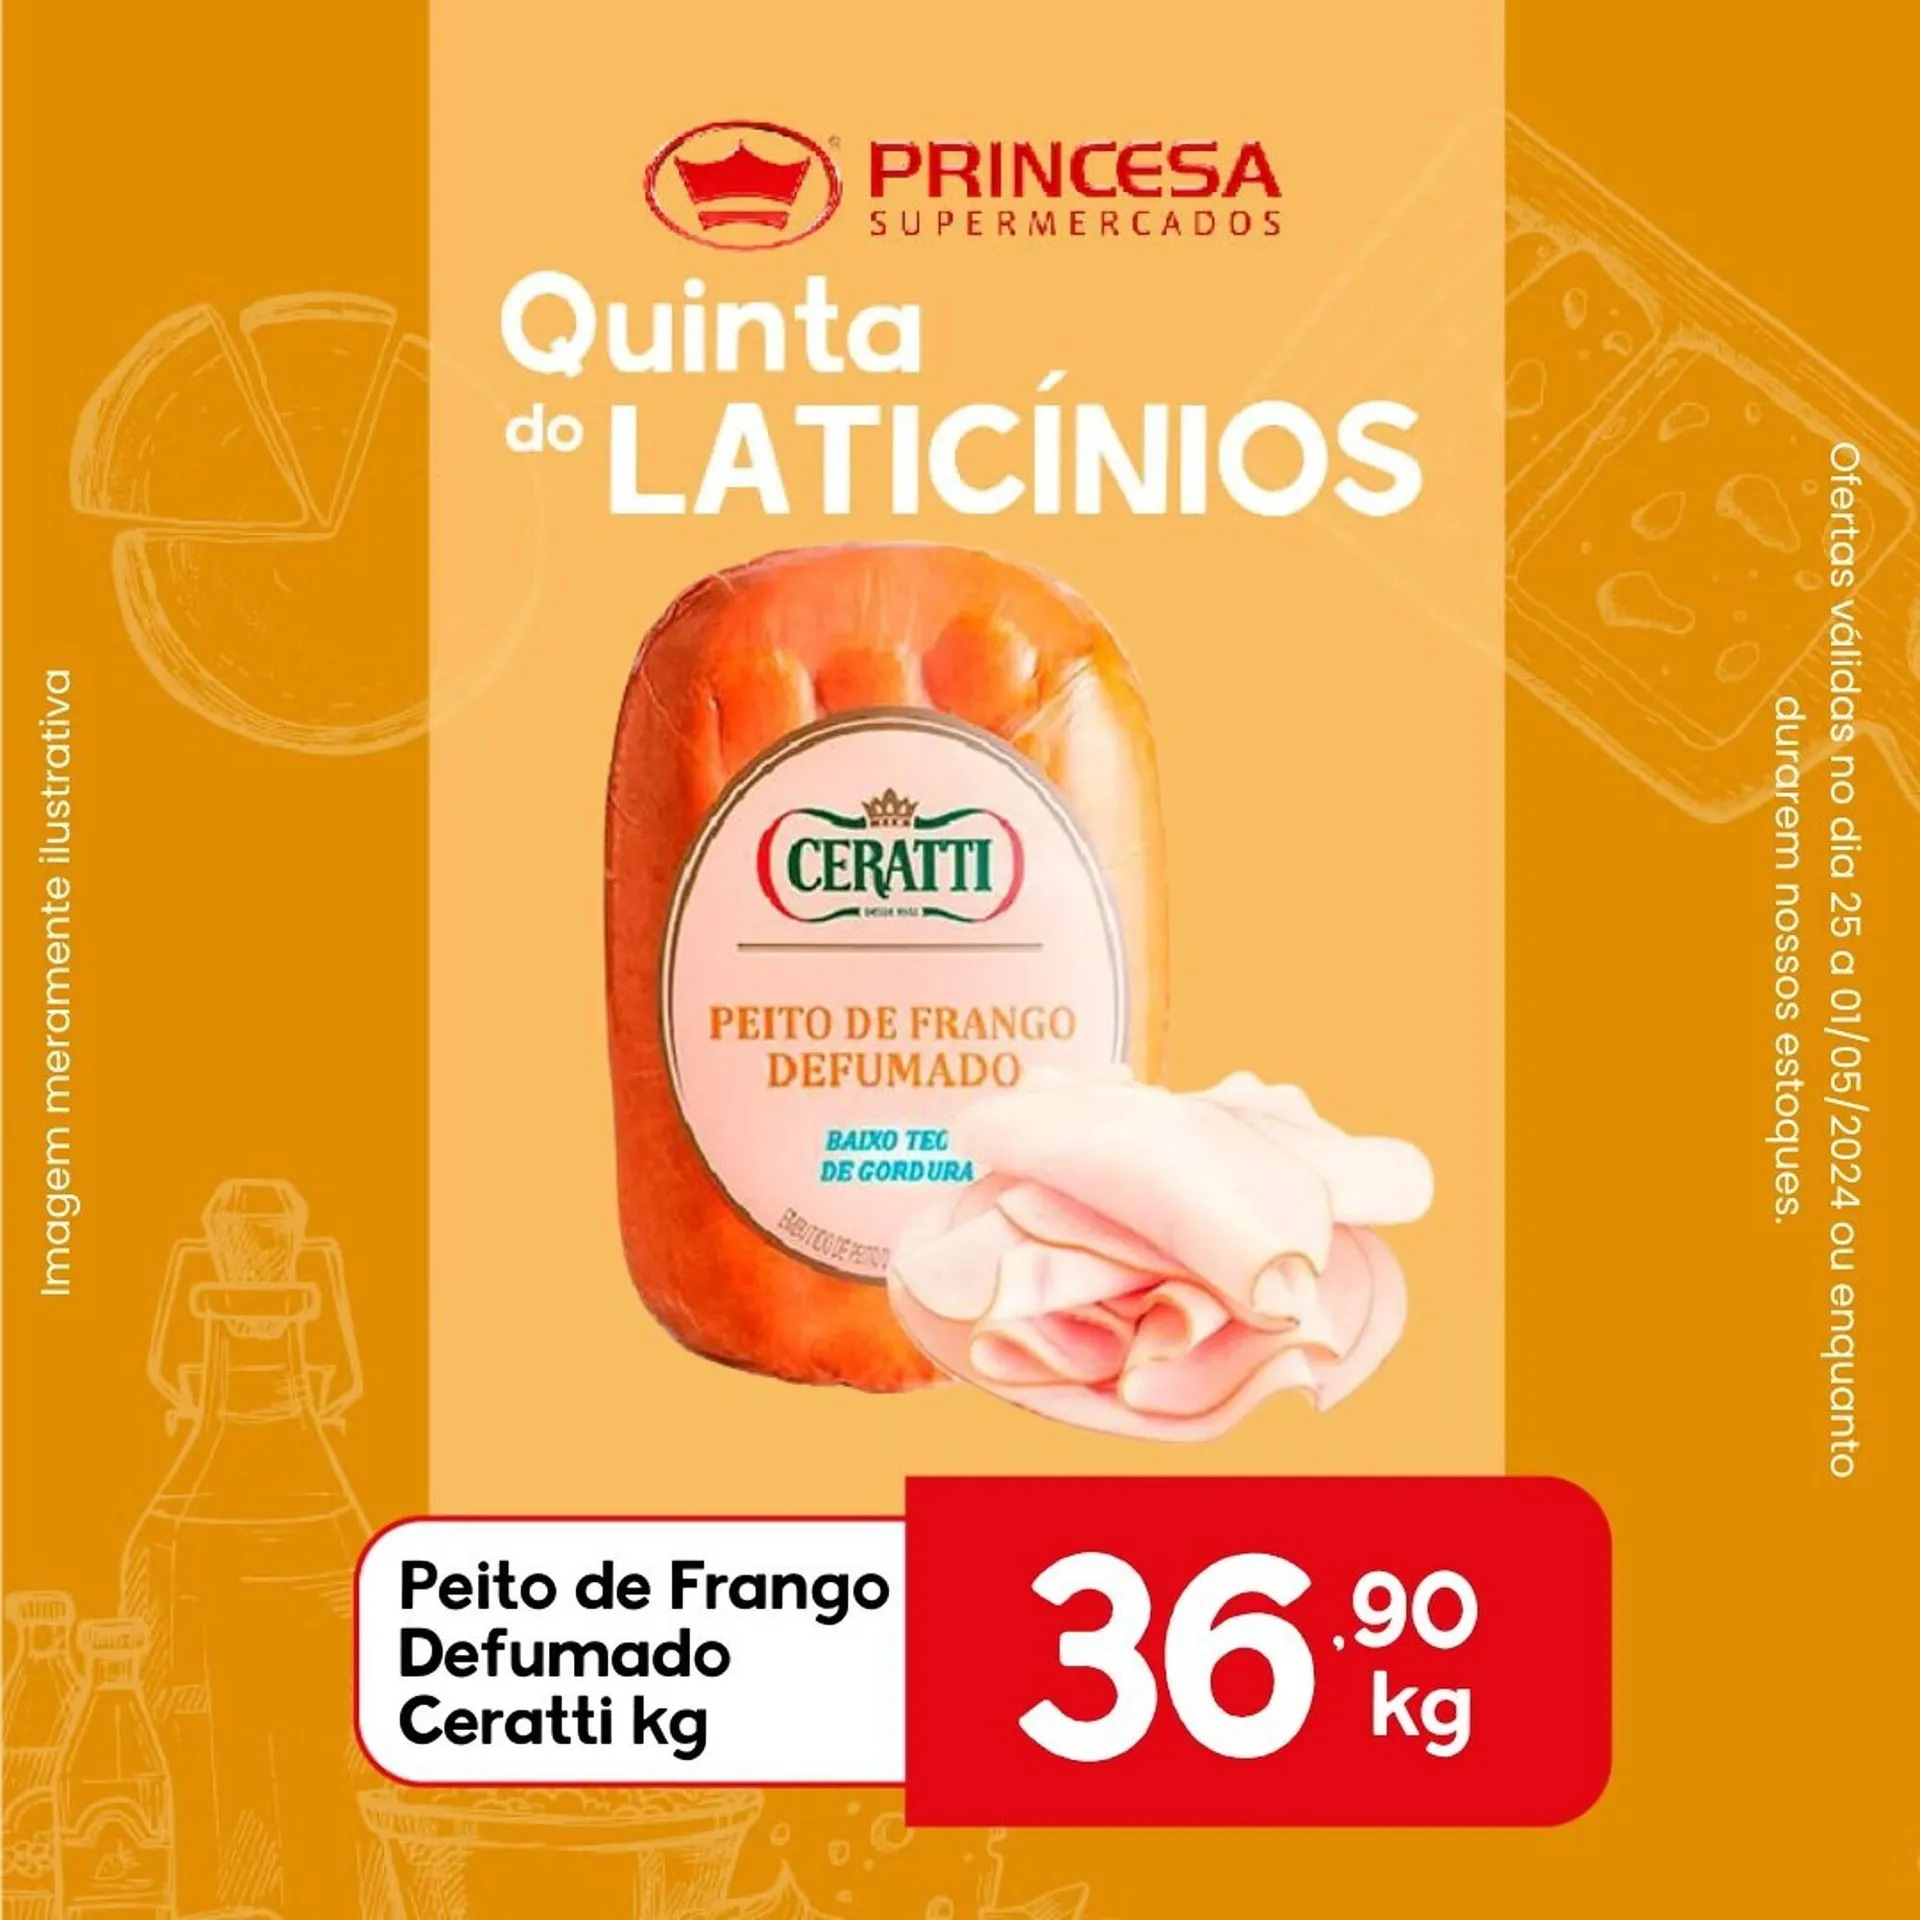 Catálogo Supermercados Princesa - 2